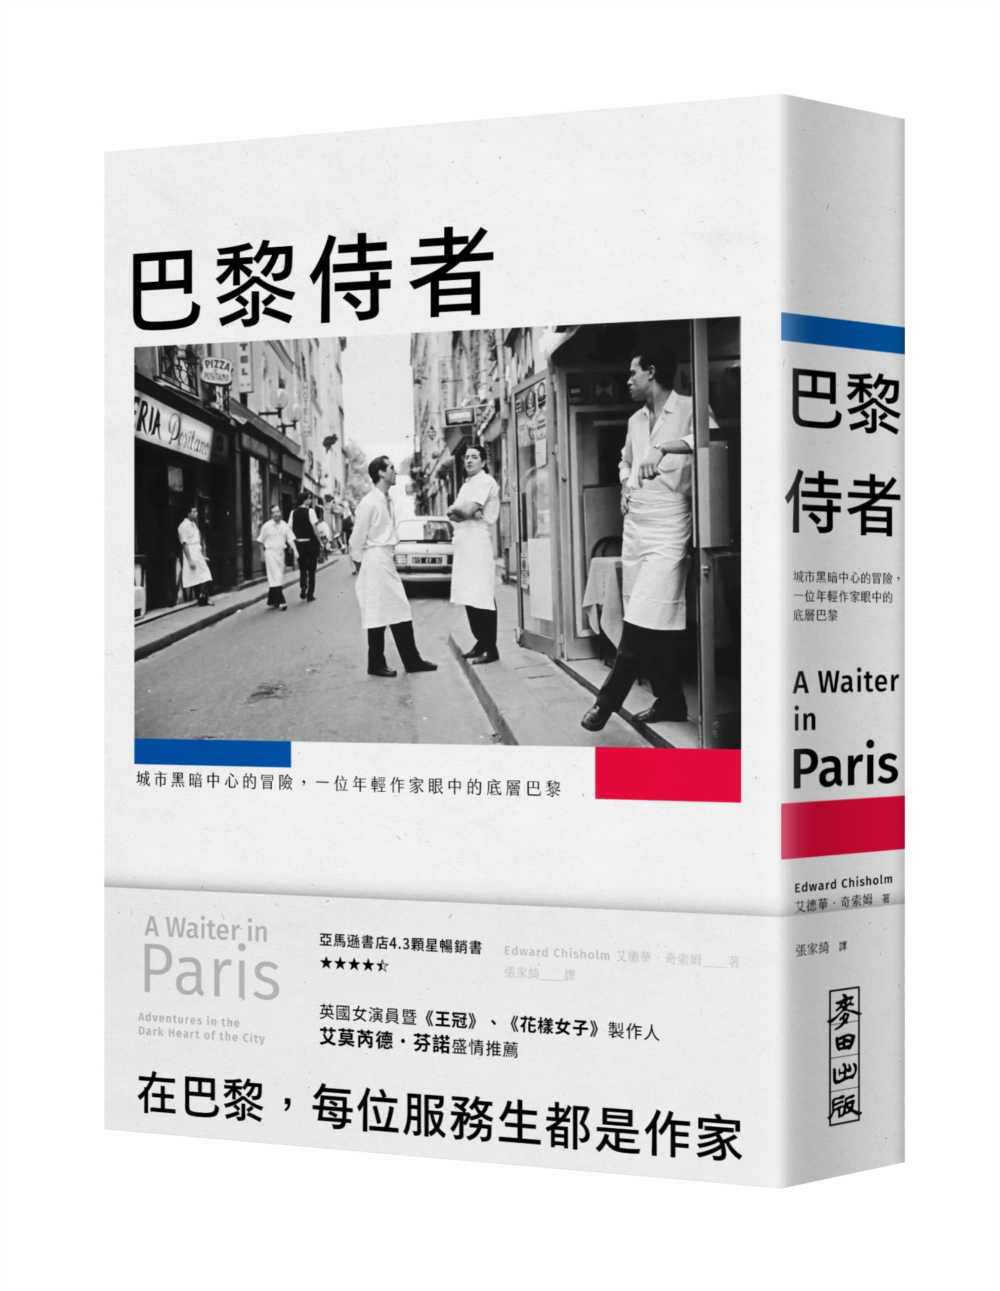 巴黎侍者: 城市黑暗中心的冒險, 一位年輕作家眼中的底層巴黎